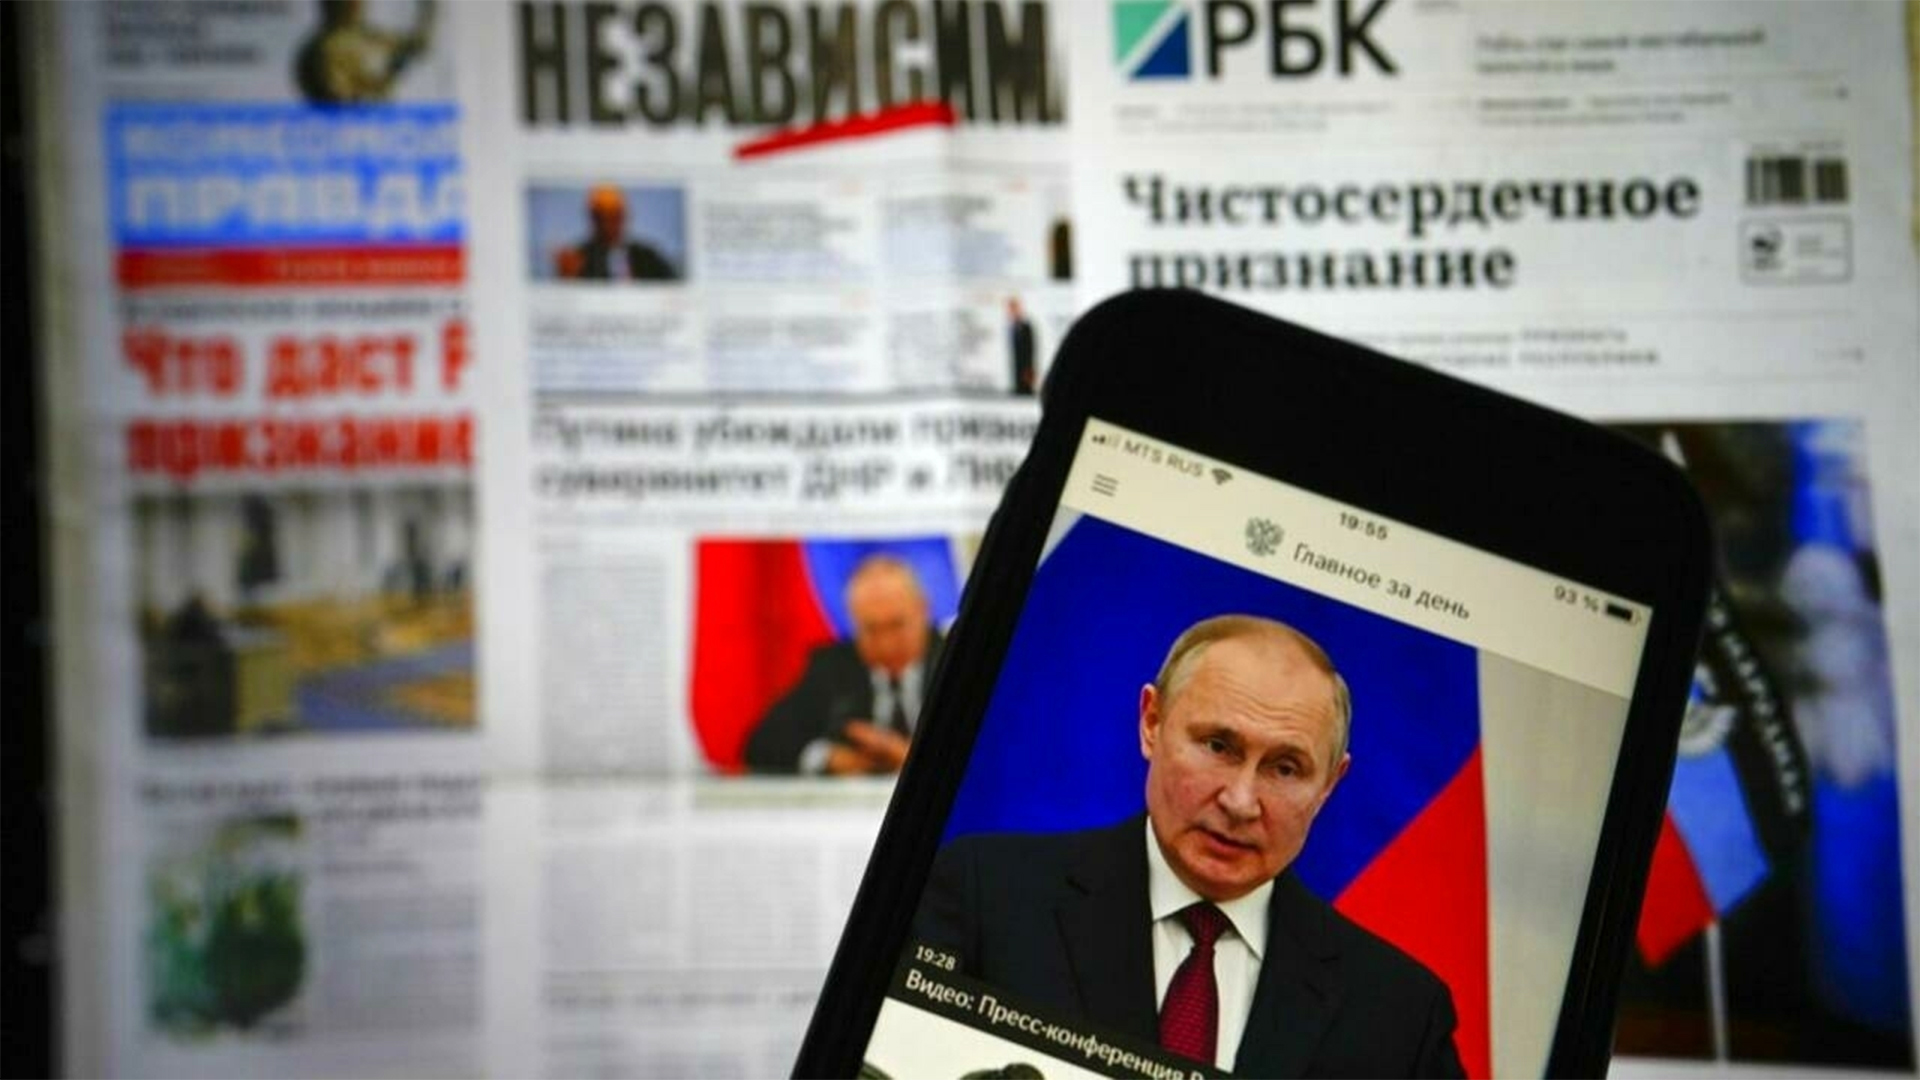 Rusia folosește rapoarte false de fact checking ca să răspândească dezinformare despre Ucraina